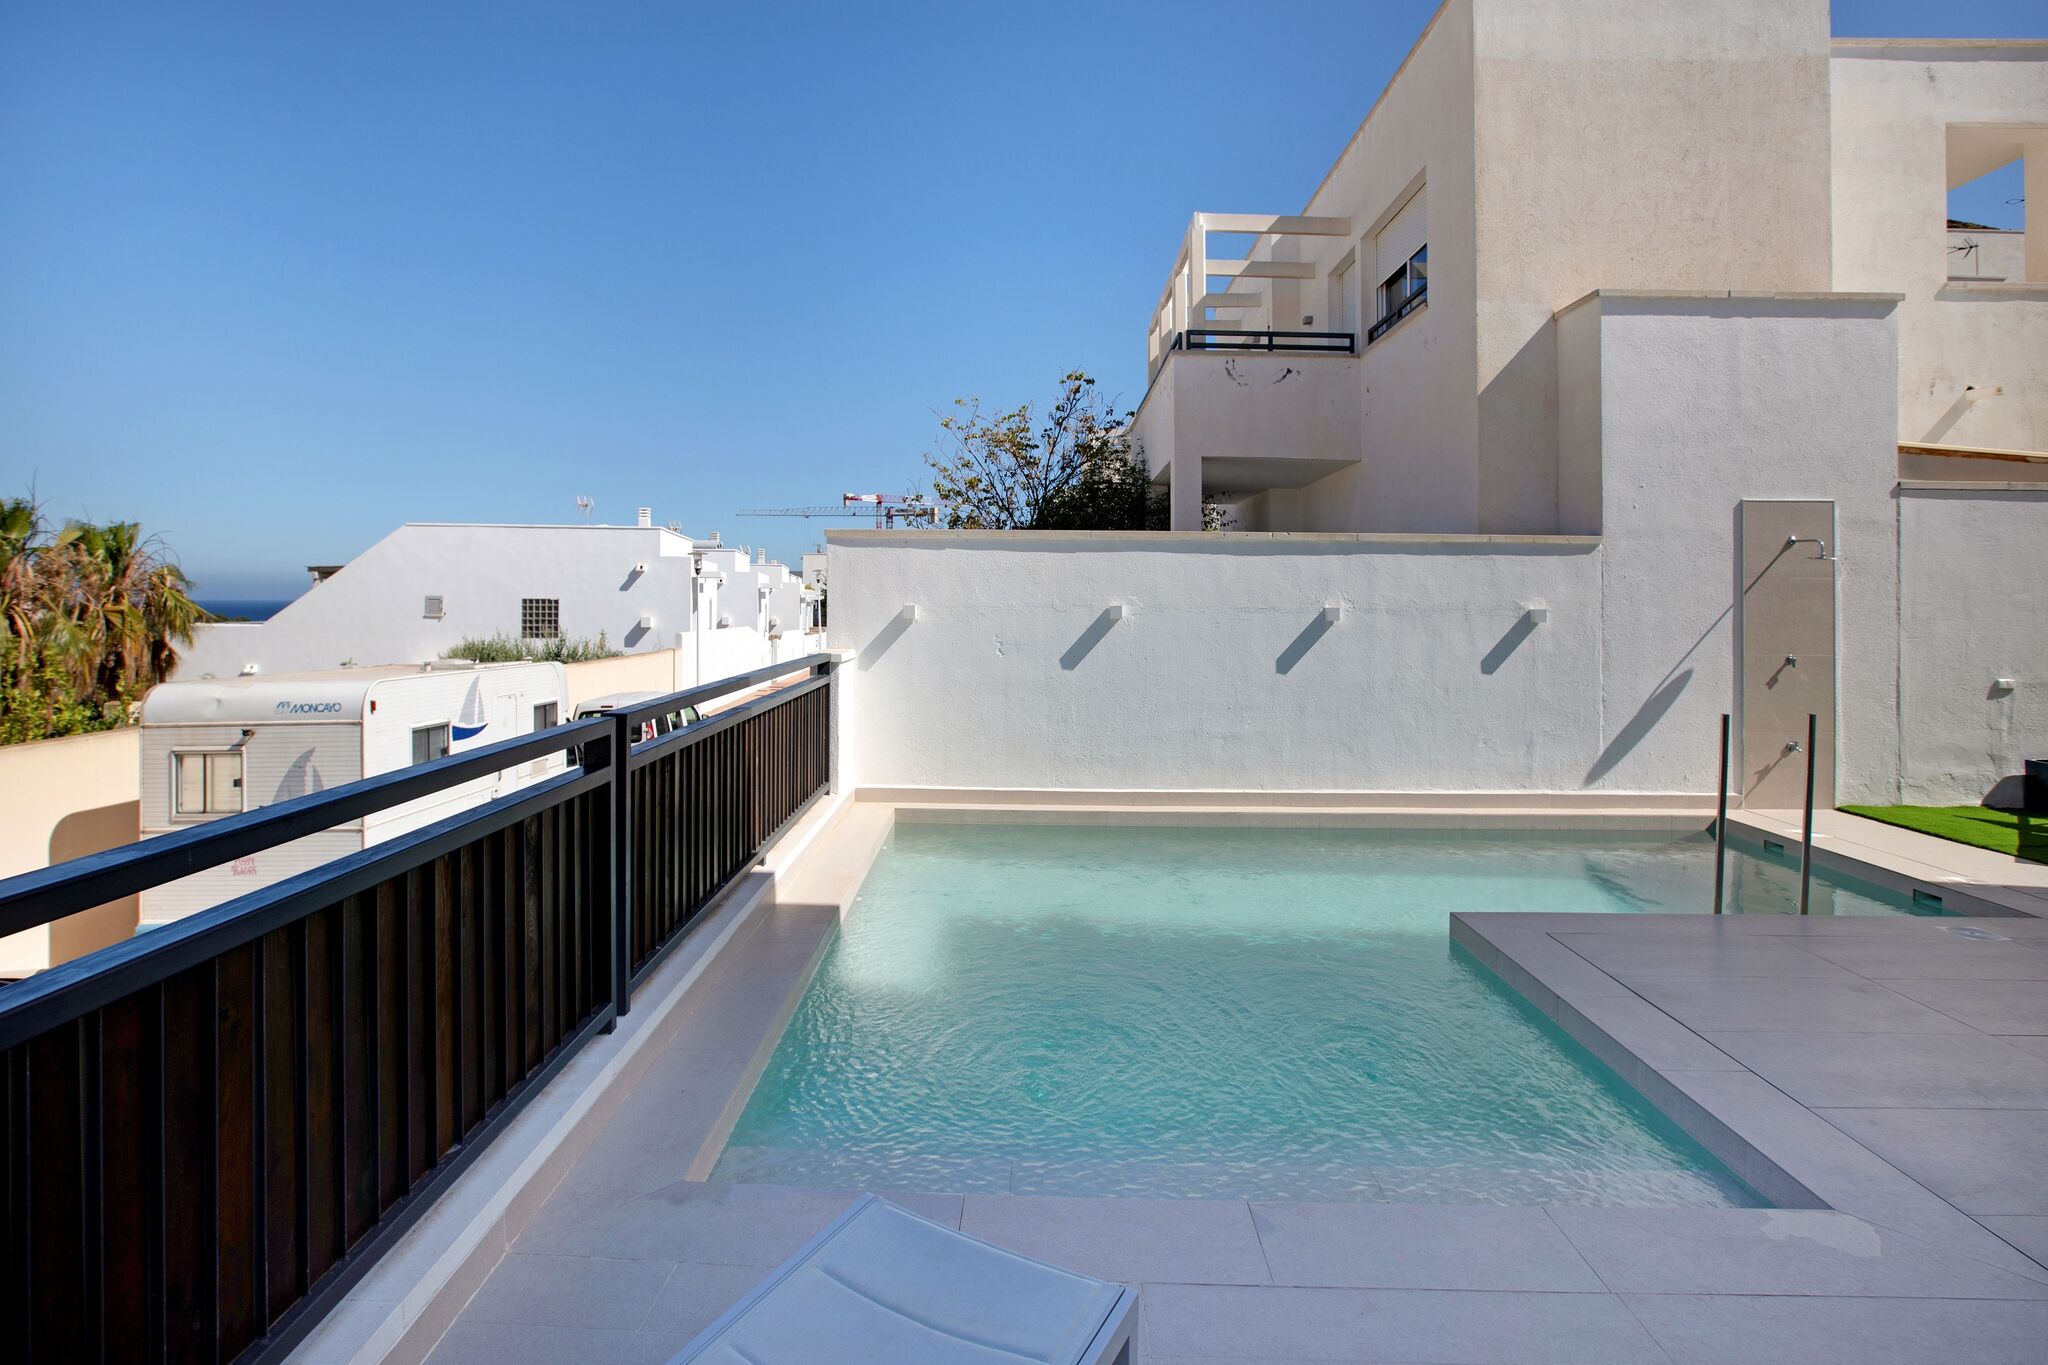 Prachtige villa in San José met een privézwembad